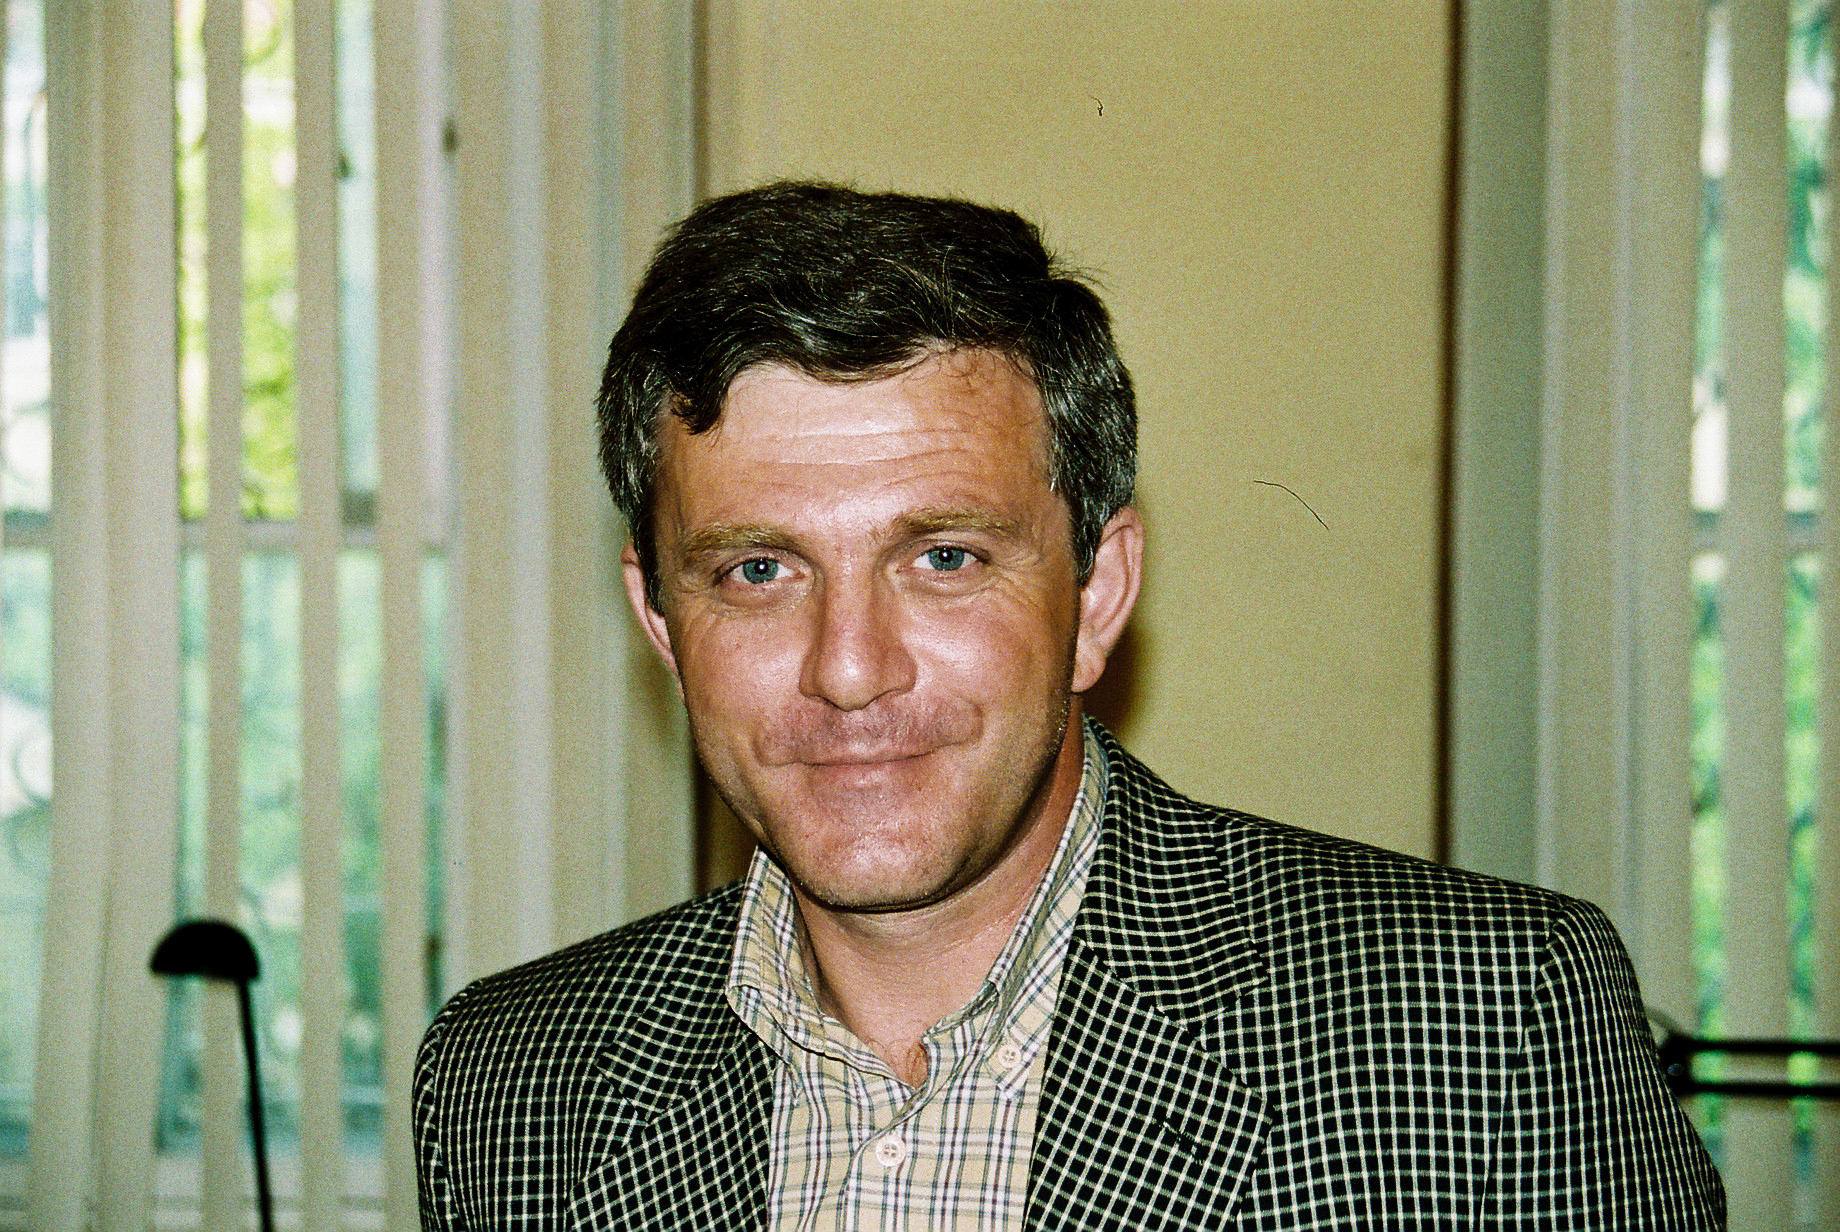 Arsen Sakalov